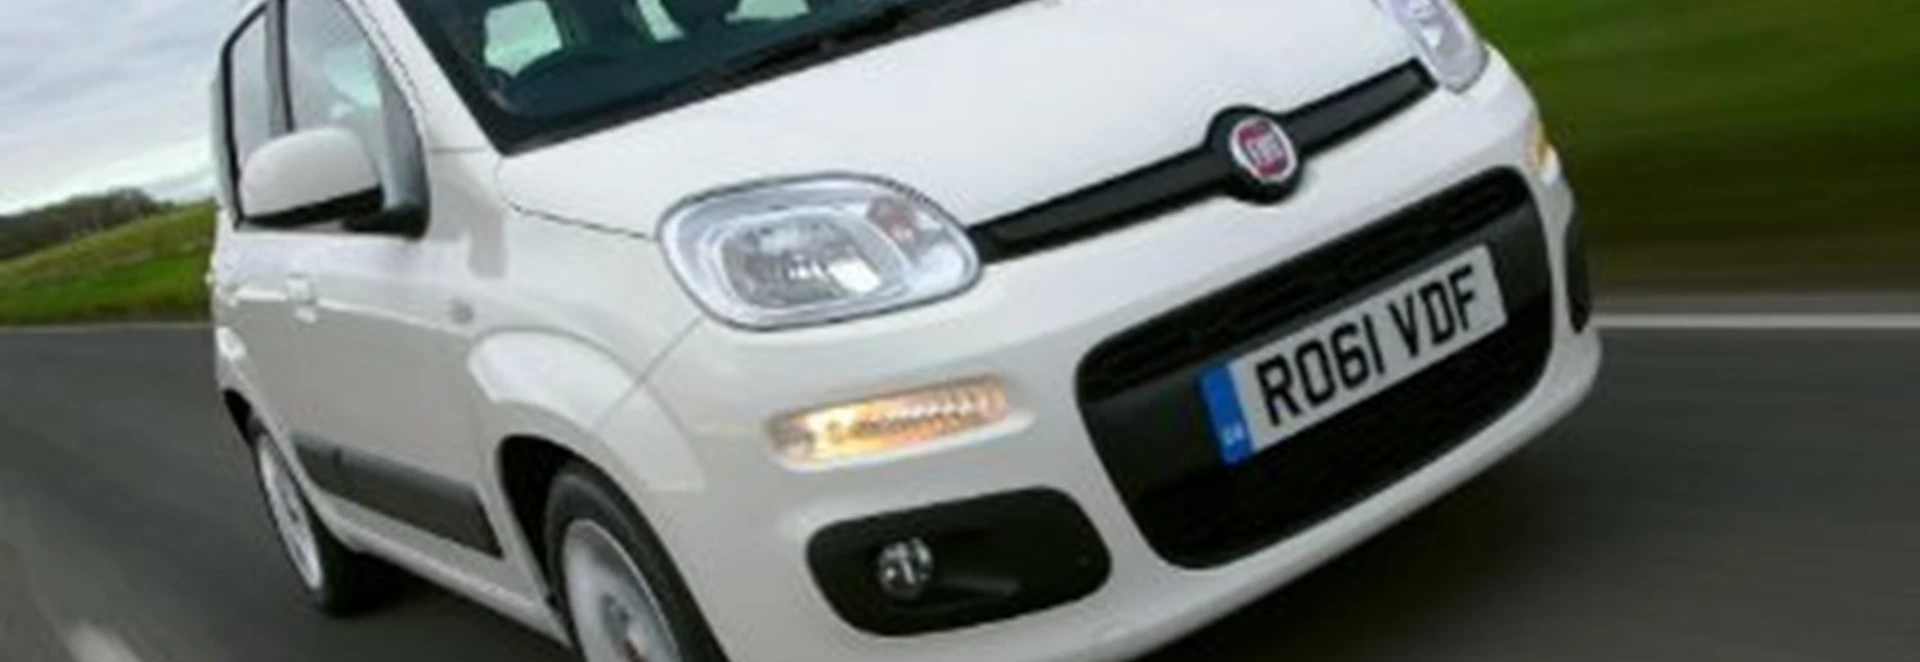 New 2012 Fiat Panda 1.2 first drive 